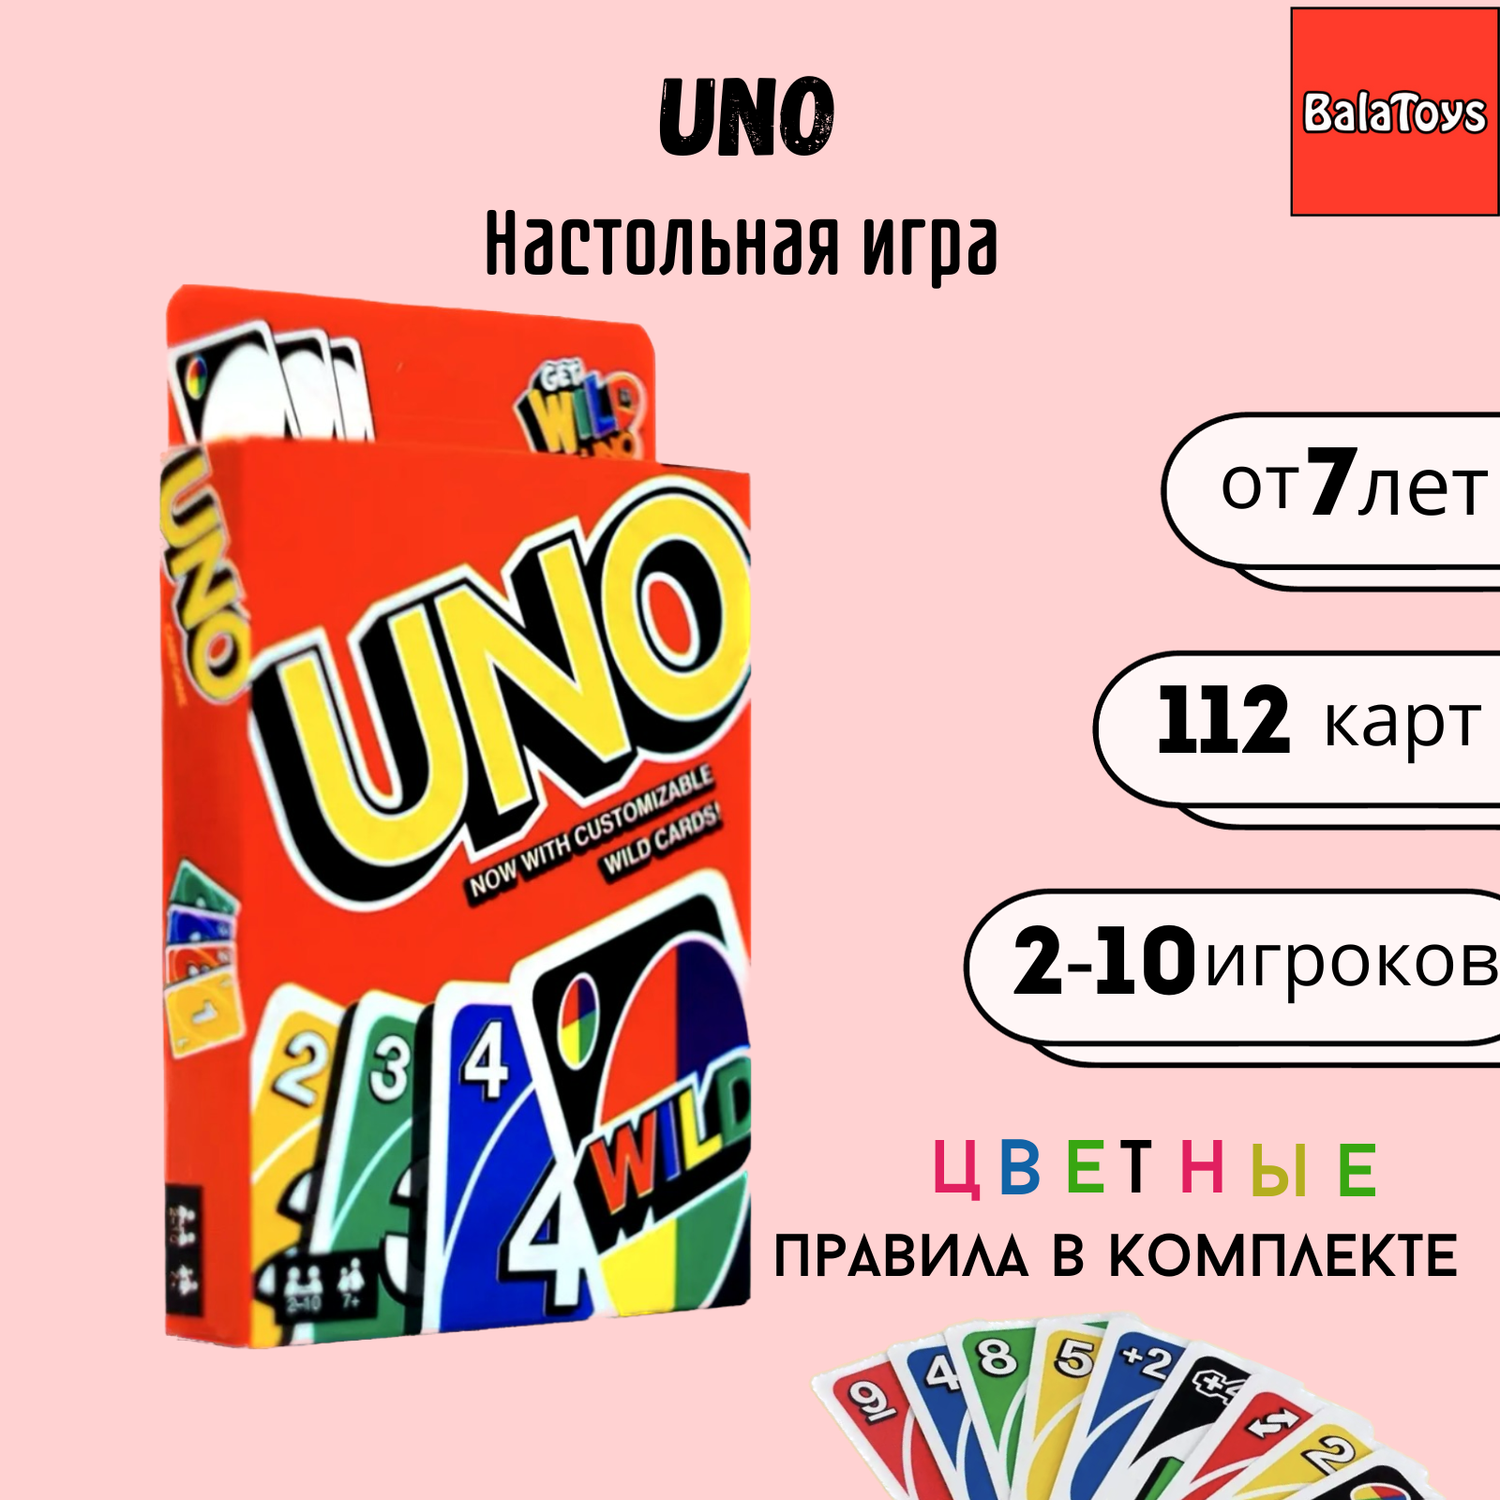 UNO карточная игра BalaToys настольная игра Уно - фото 1